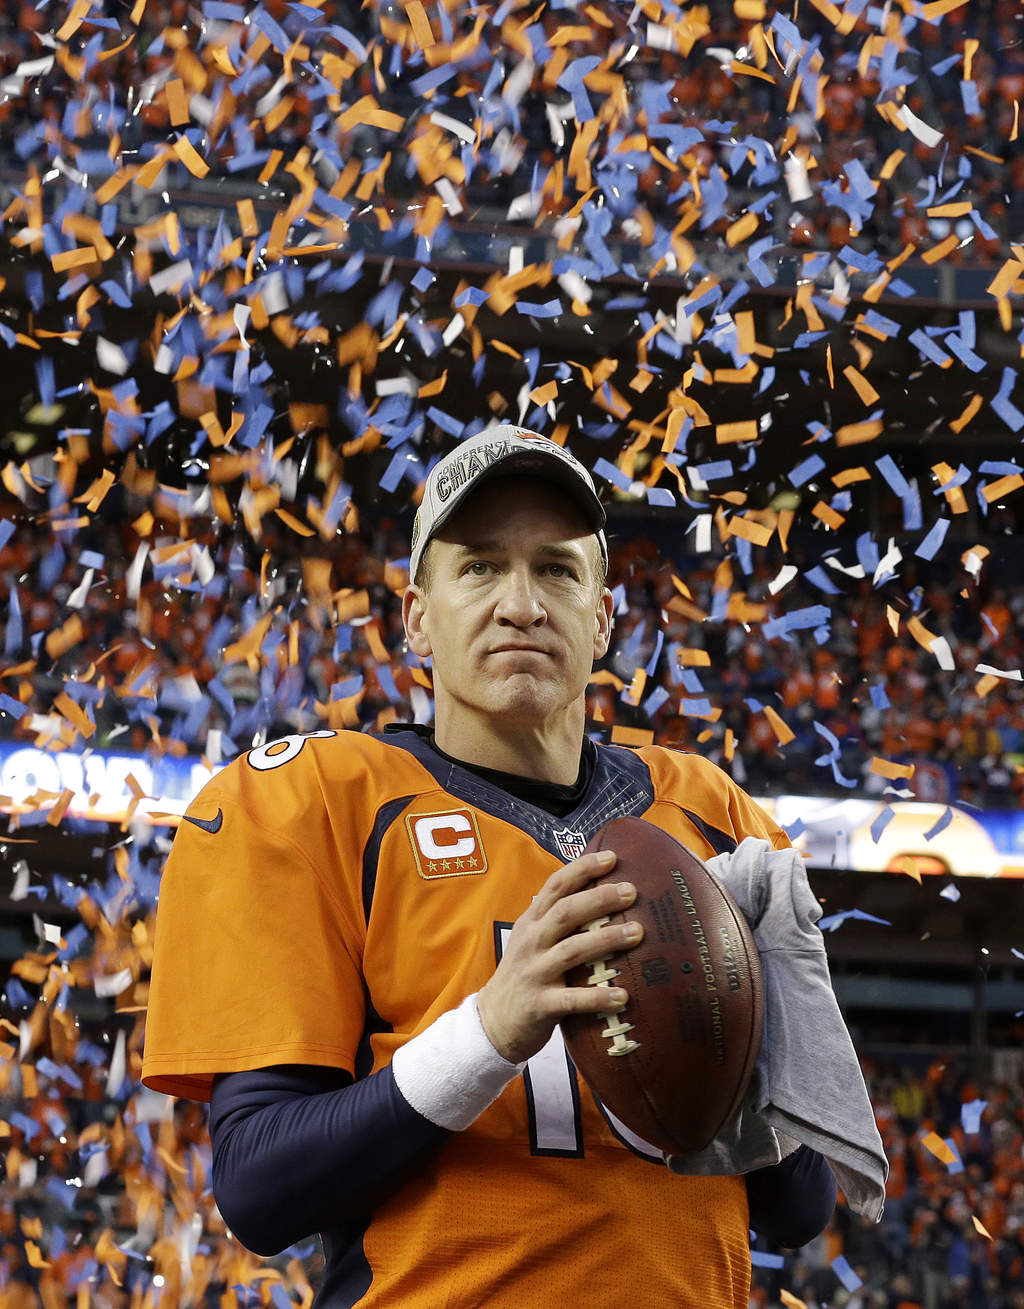 Manning quedó con marca de 6-11 en su duelo particular contra Brady, pero 3-1 cuando se trata del partido por el título de la AFC. Brady, sin embargo, es dueño de cuatro anillos de campeón de la NFL, y Manning apenas tiene uno. (AP)